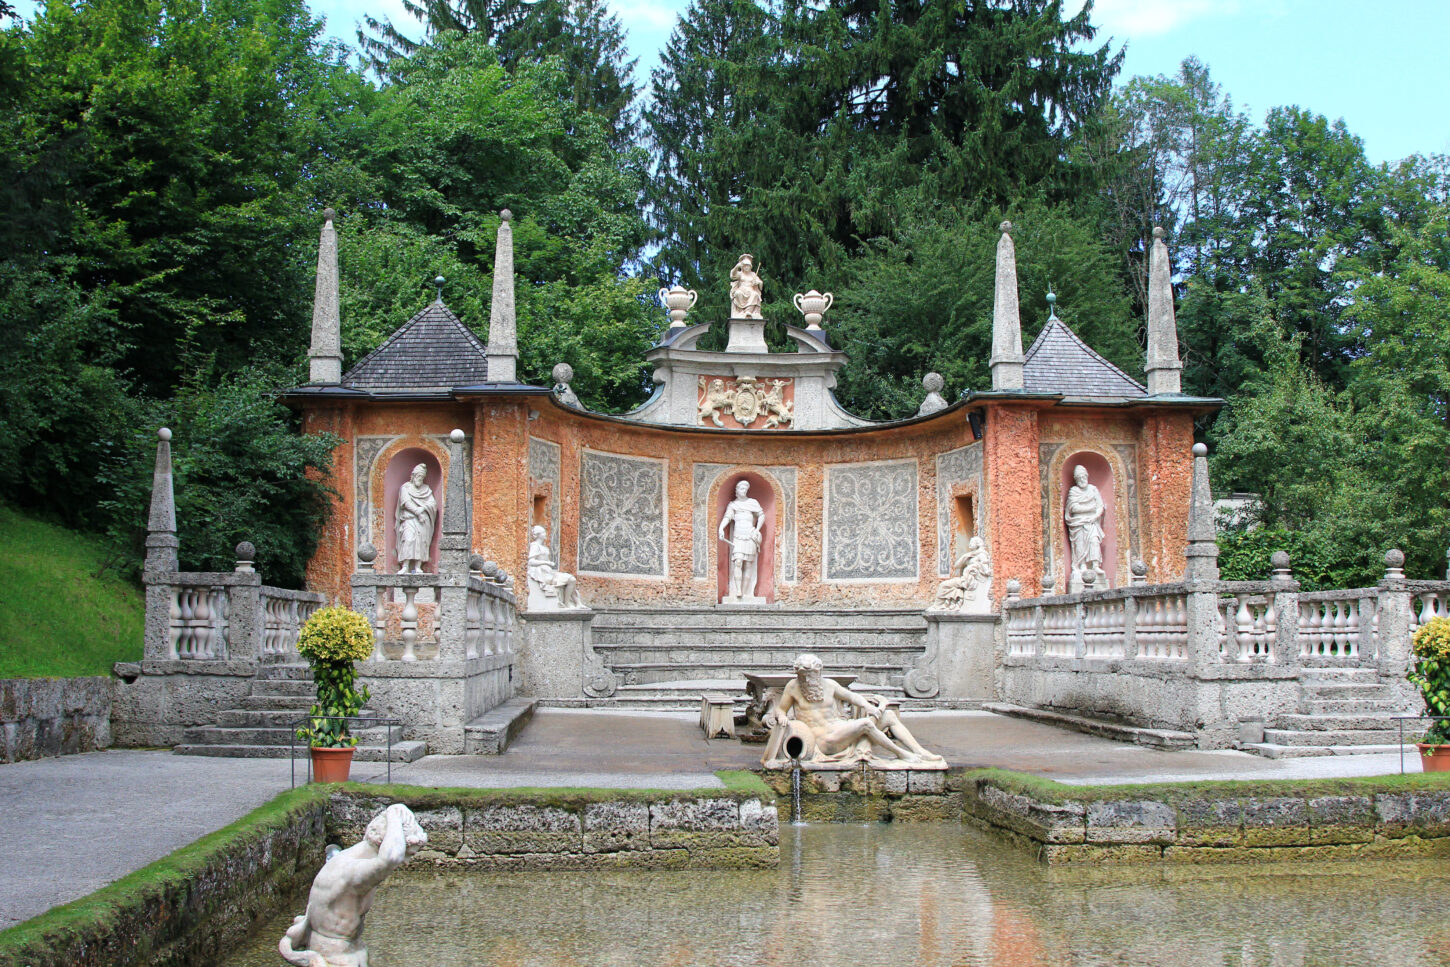 An elaborate fountain at the Summer Palace (Schloss Hellbrunn)